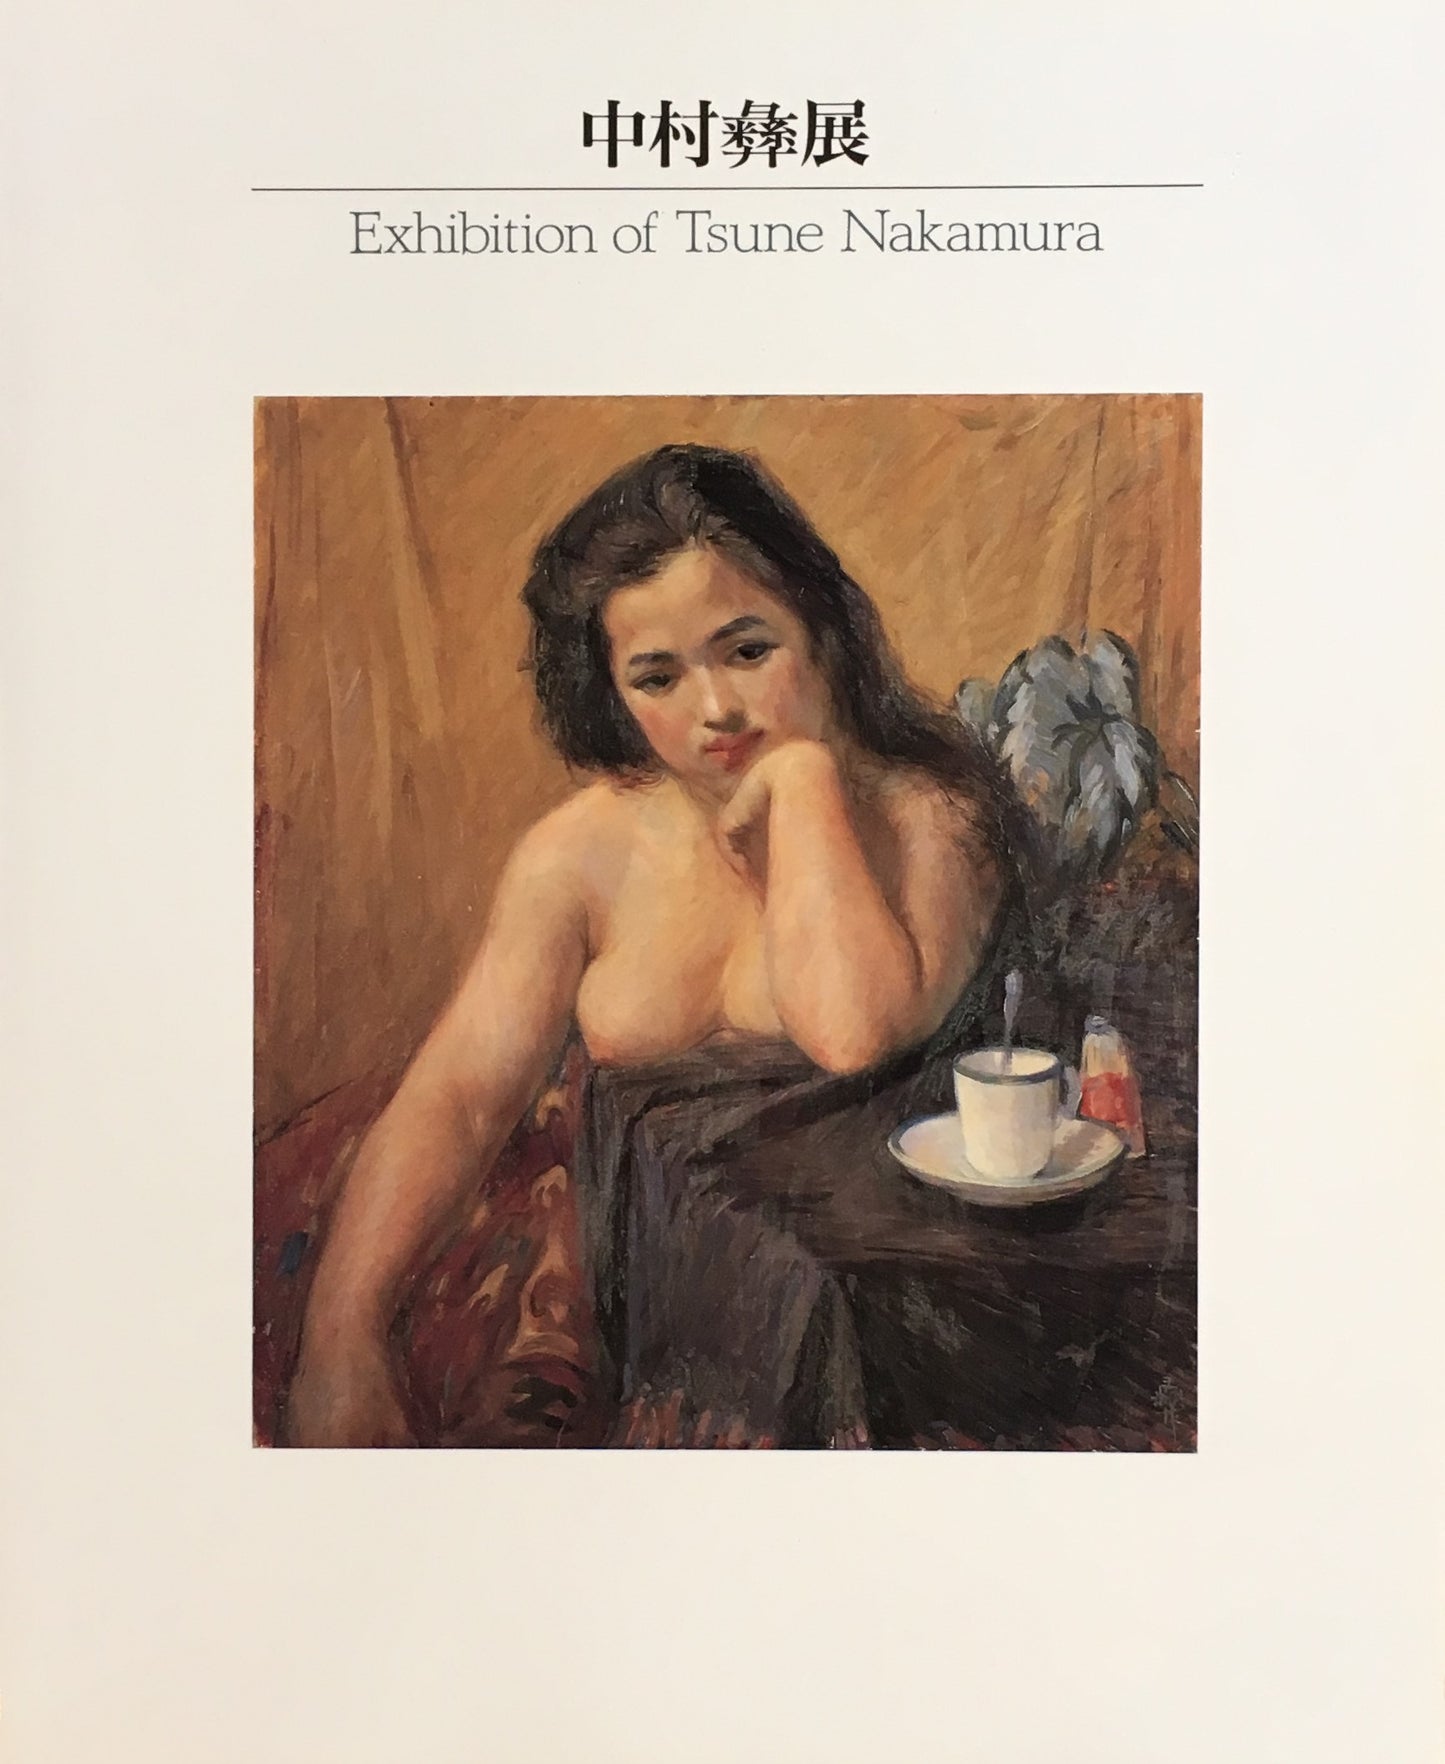 中村彝展　Exhibition of Tsune Nakamura　1995